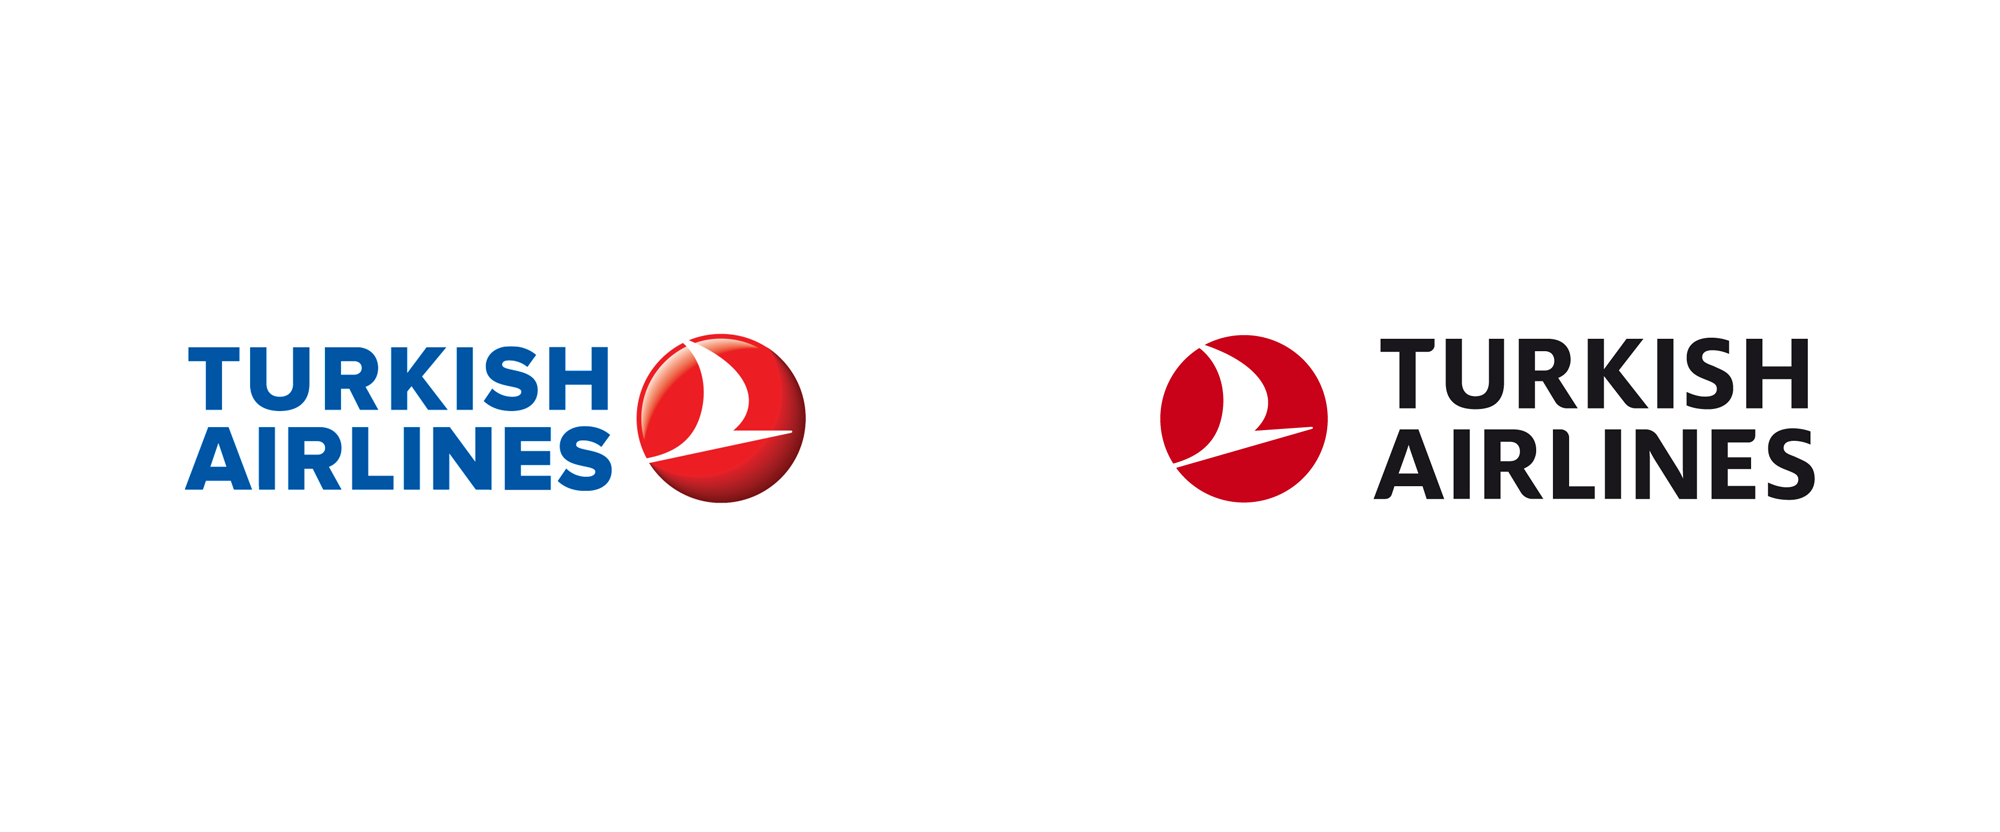 turkish airline logo